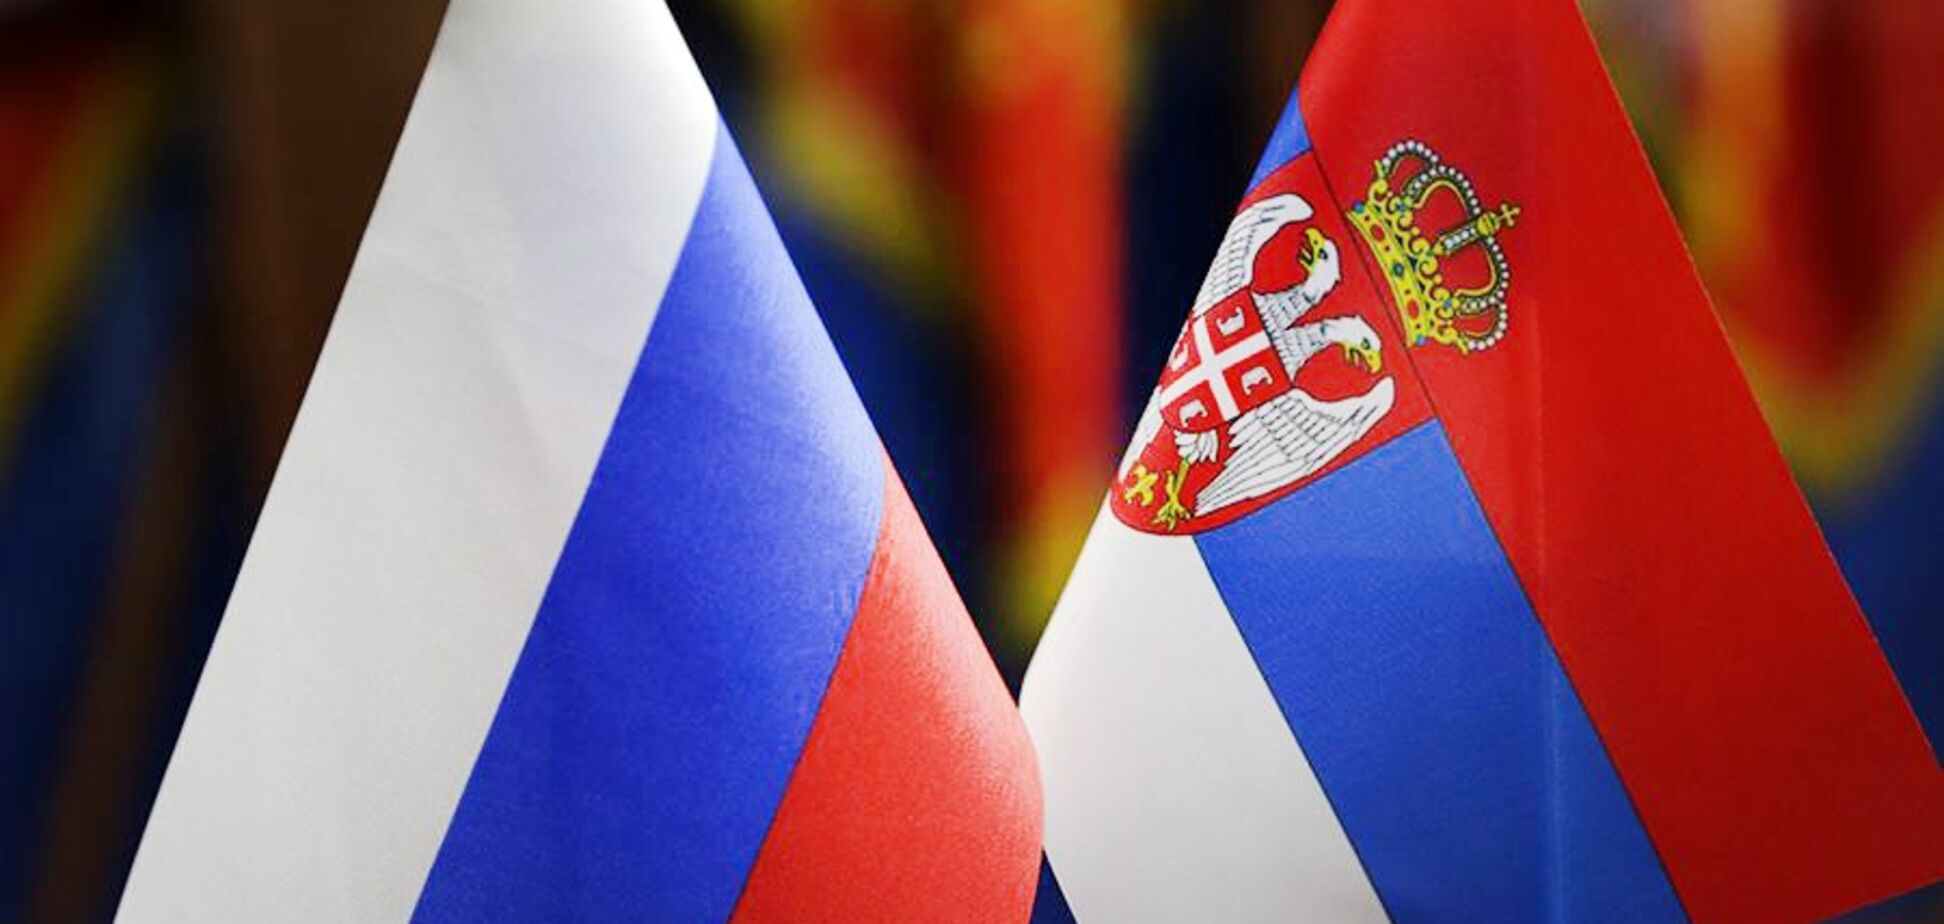  Сербия никогда не введет санкции против России: появилось громкое заявление